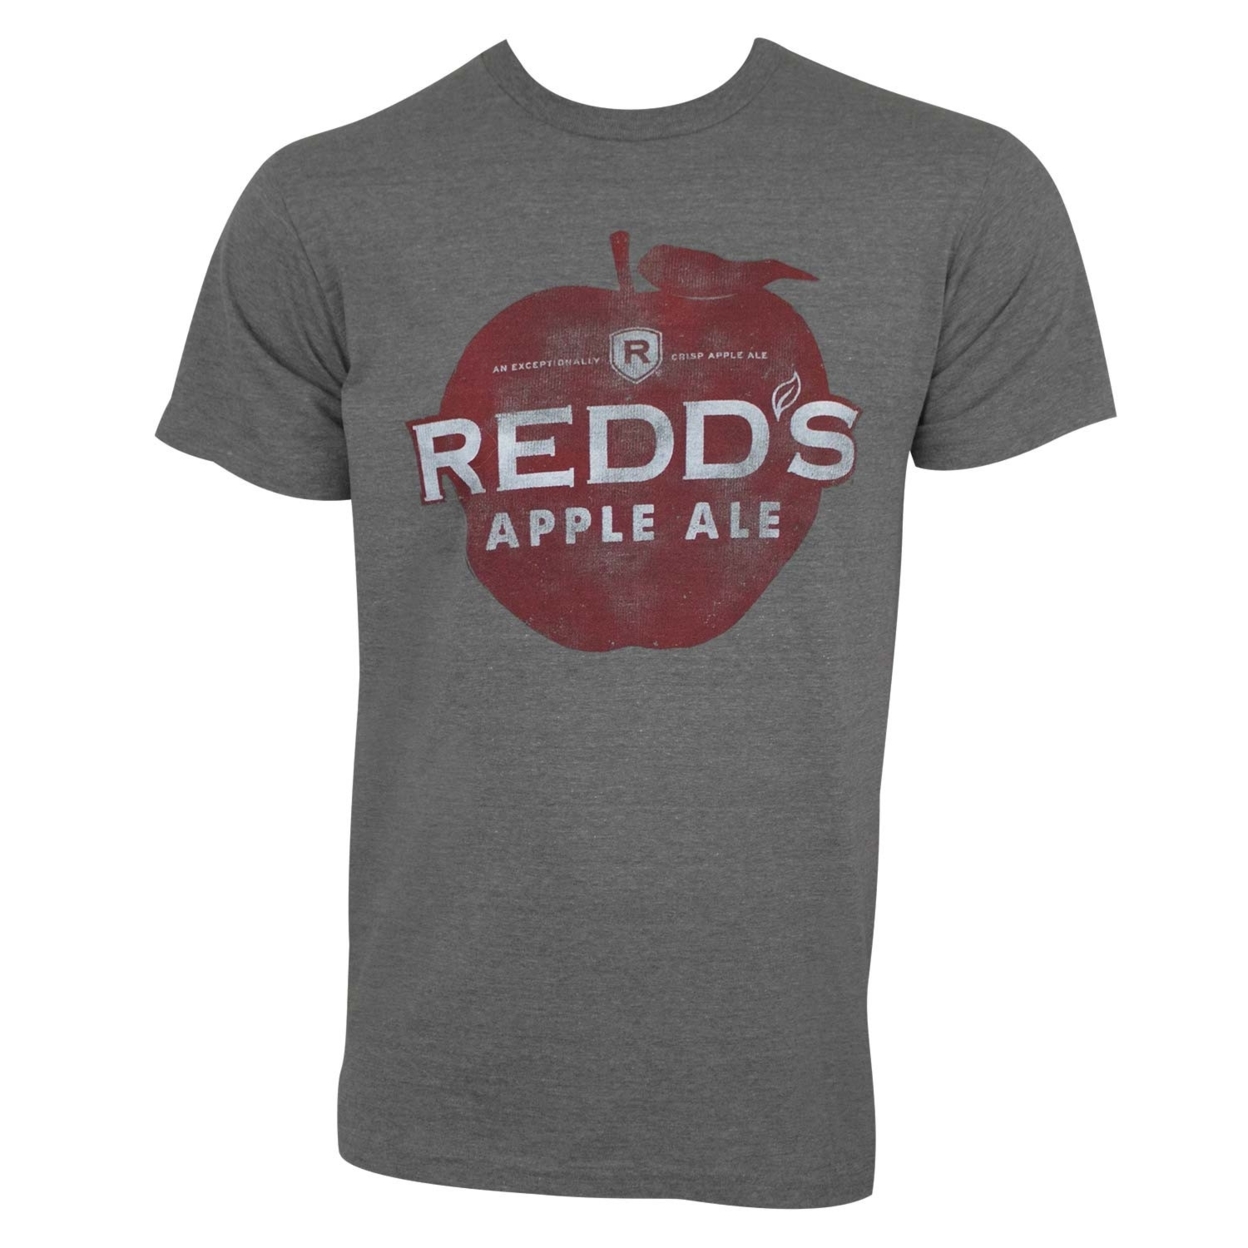 Redd's Apple Ale Redds Apple Ale Tee Shirt